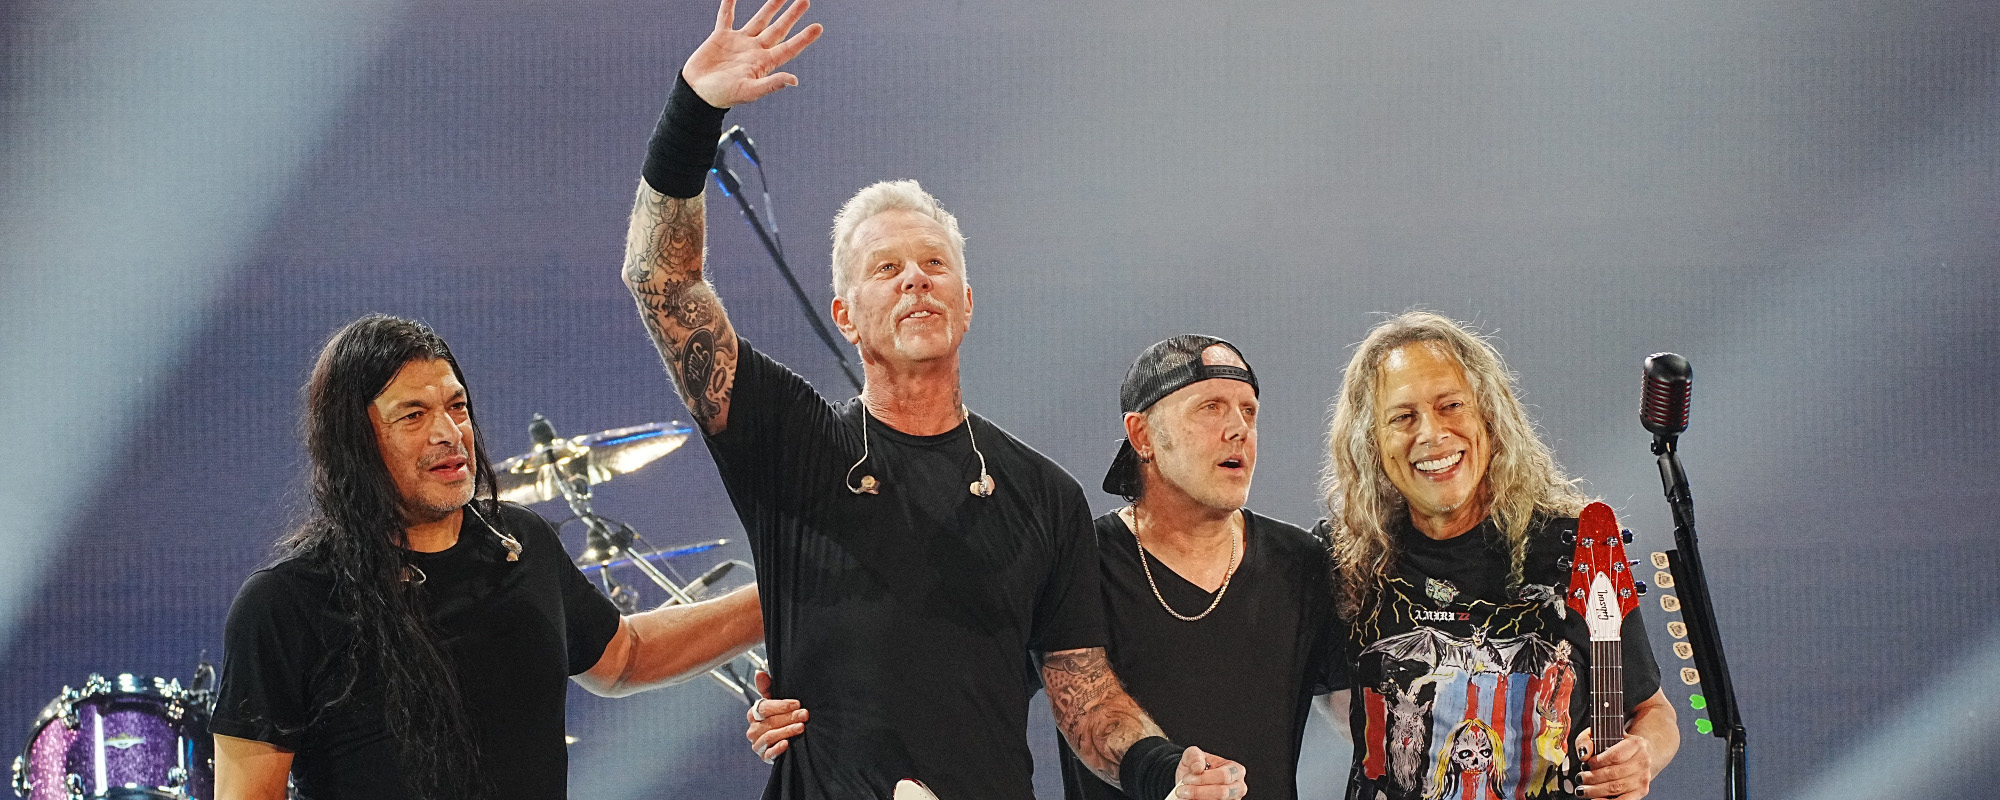 La fondation All Within My Hands de Metallica annonce sa cinquième année